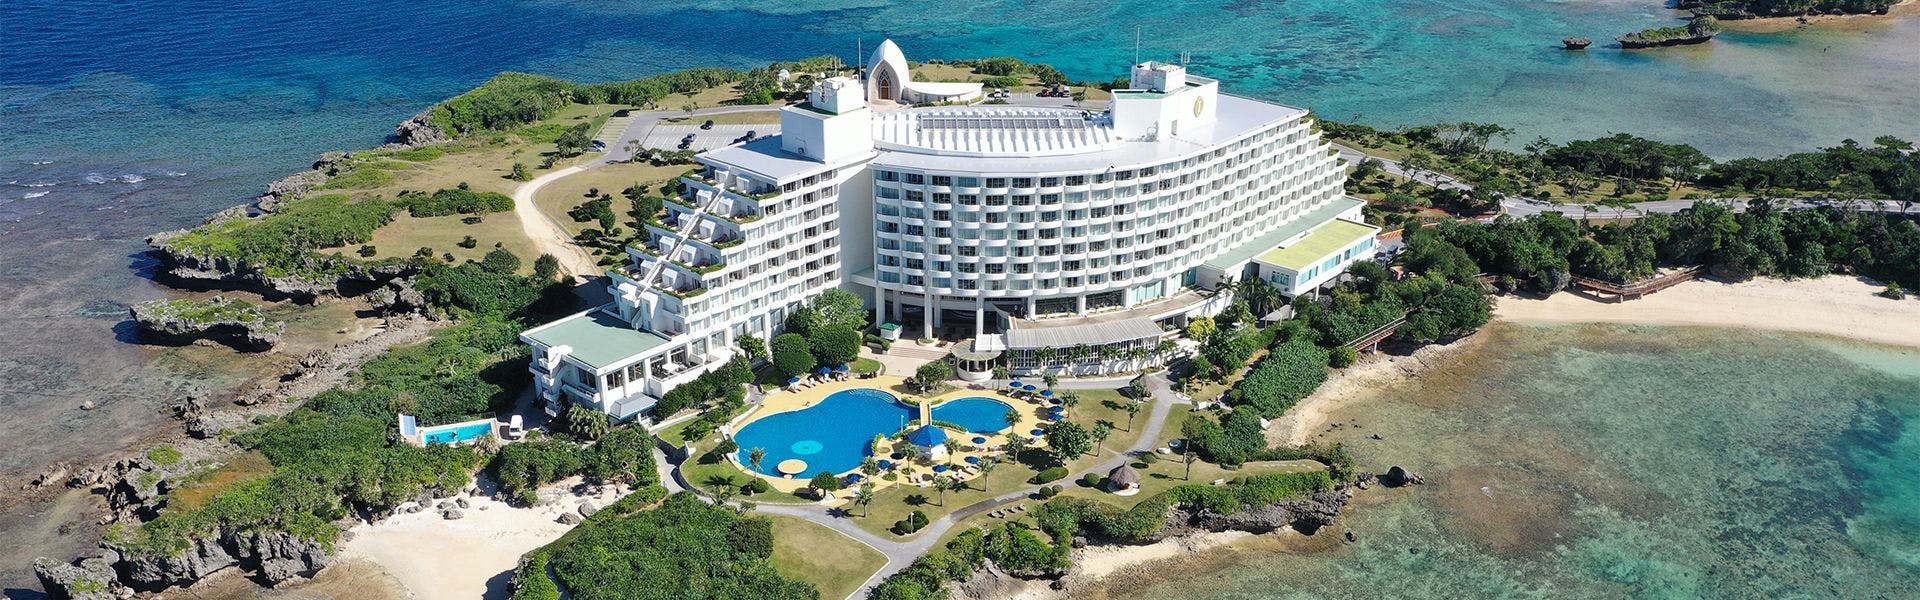 ランキング 沖縄本島北部の40平米以上のお部屋 インターコンチネンタルホテルズ リゾーツ 宿泊予約は 一休 Com